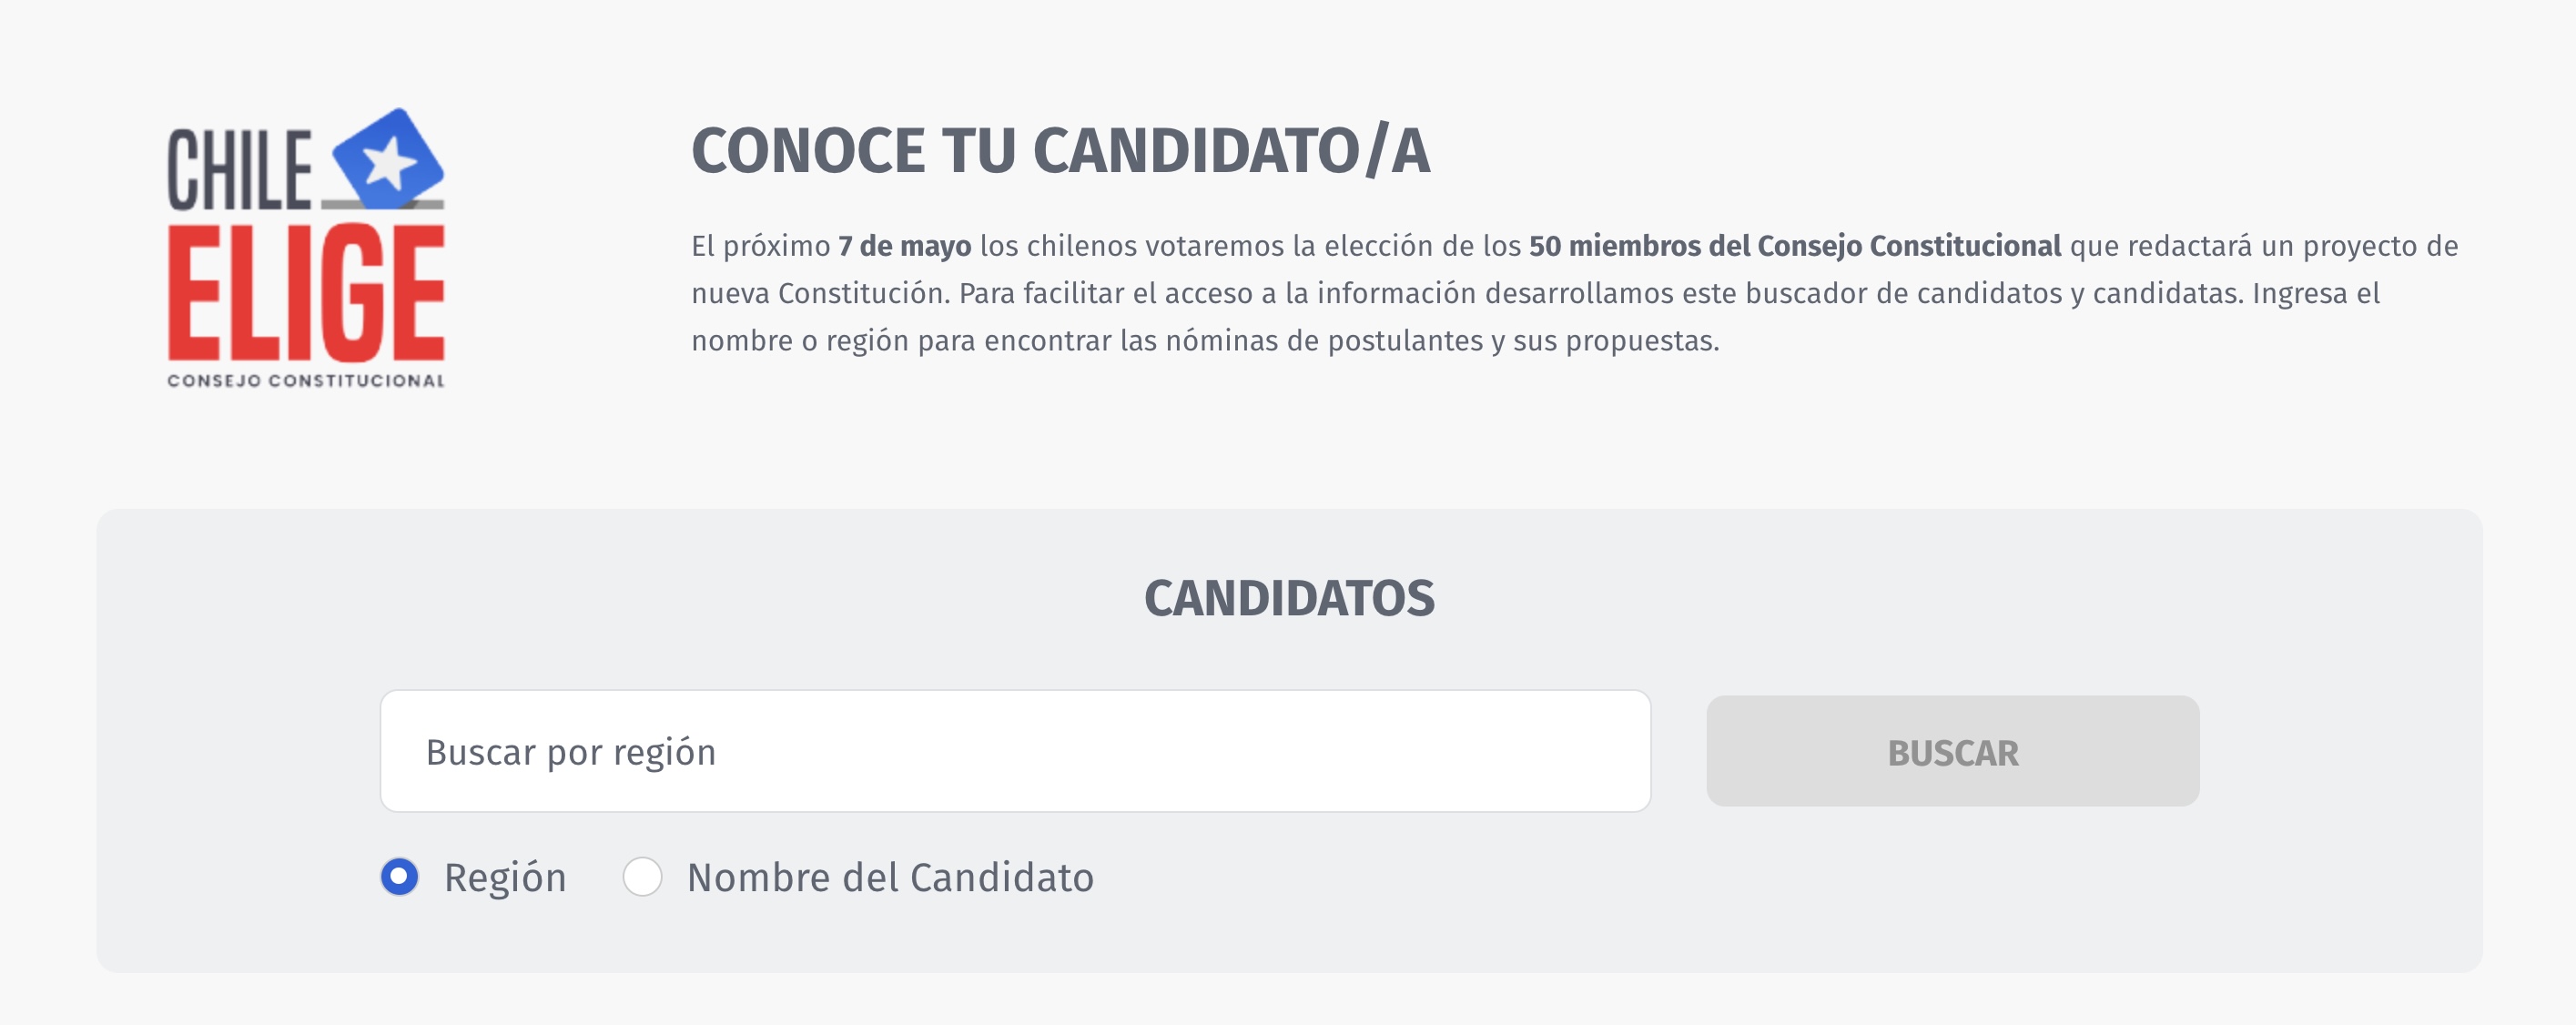 Captura de pantalla de la página web de 24horas.cl "Conoce a tu candidato/a"